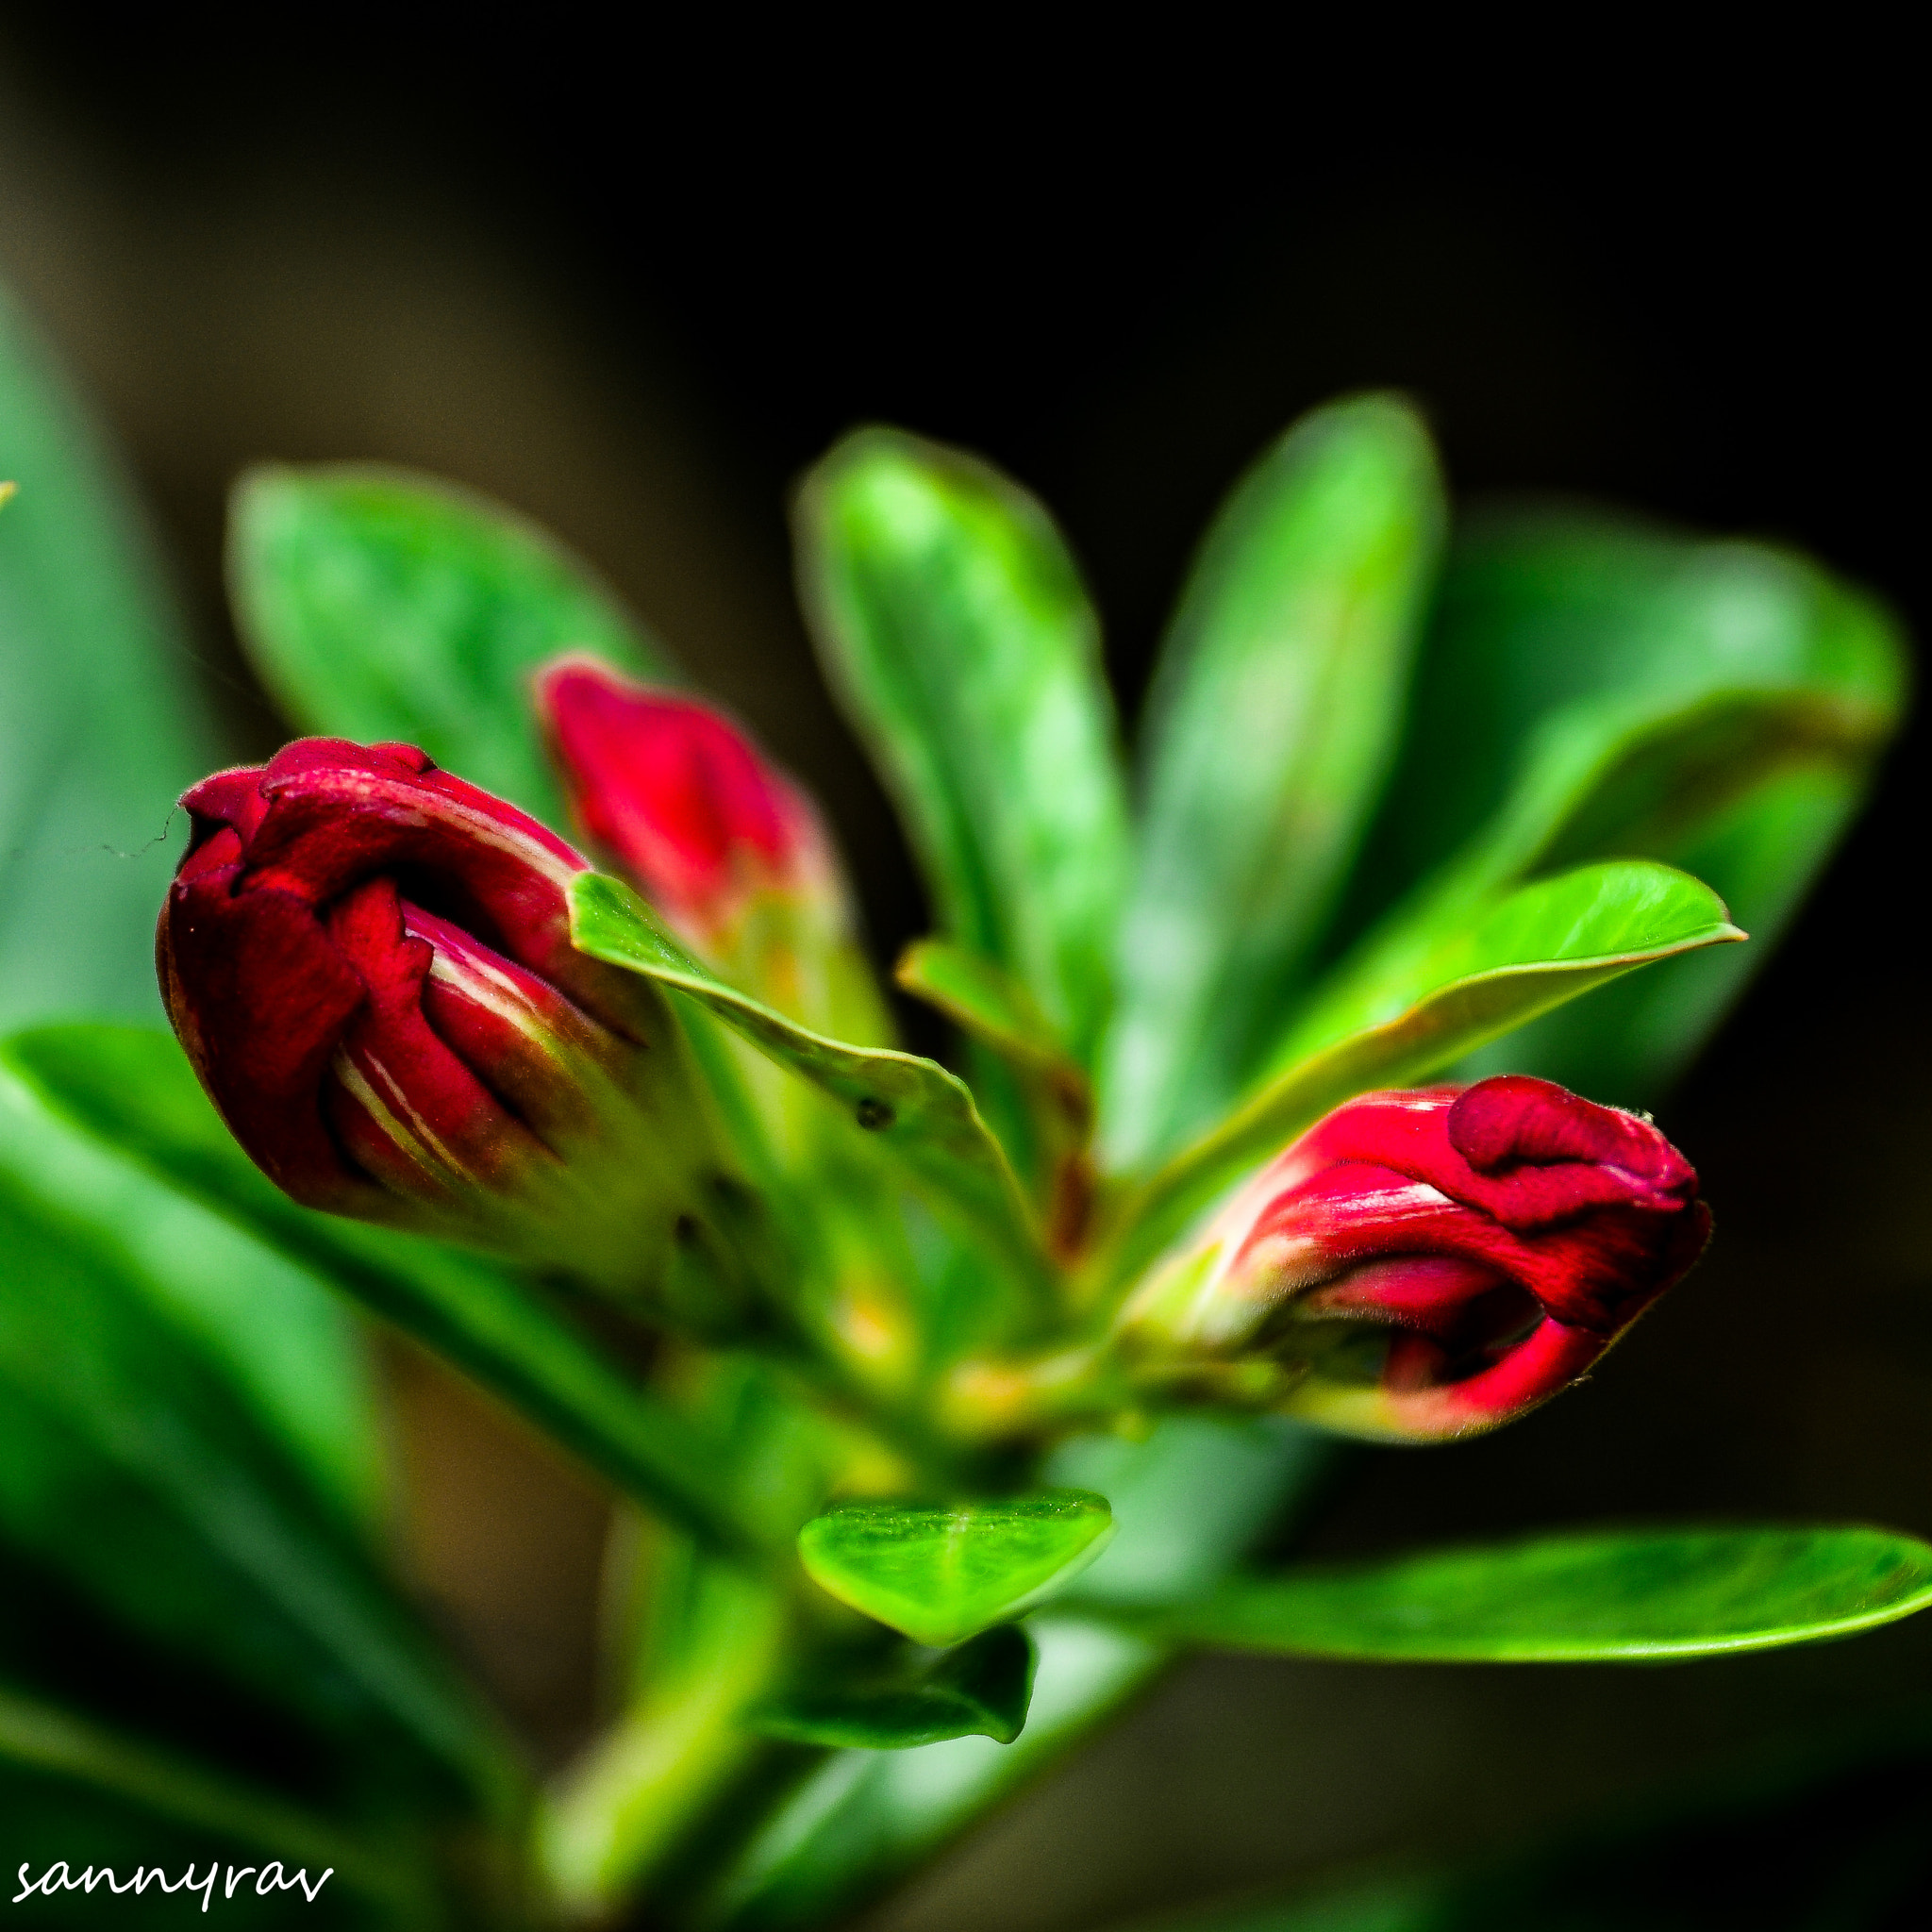 AF Zoom-Nikkor 35-70mm f/2.8D sample photo. Red flower buds photography